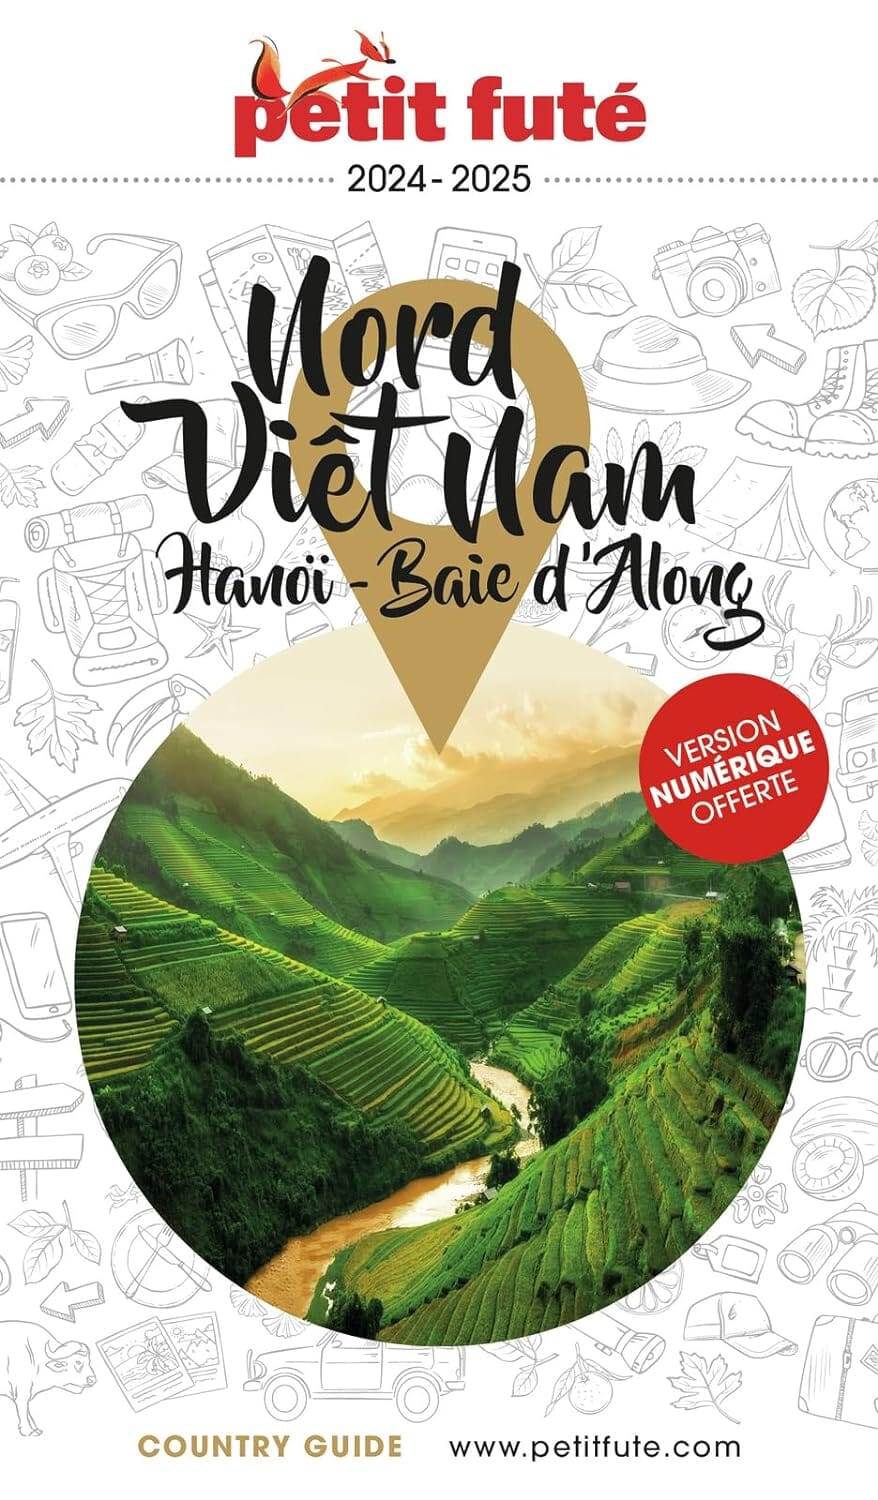 Guide de voyage - Nord Vietnam, Hanoi & Baie d'Along 2024/25 | Petit Futé guide de voyage Petit Futé 